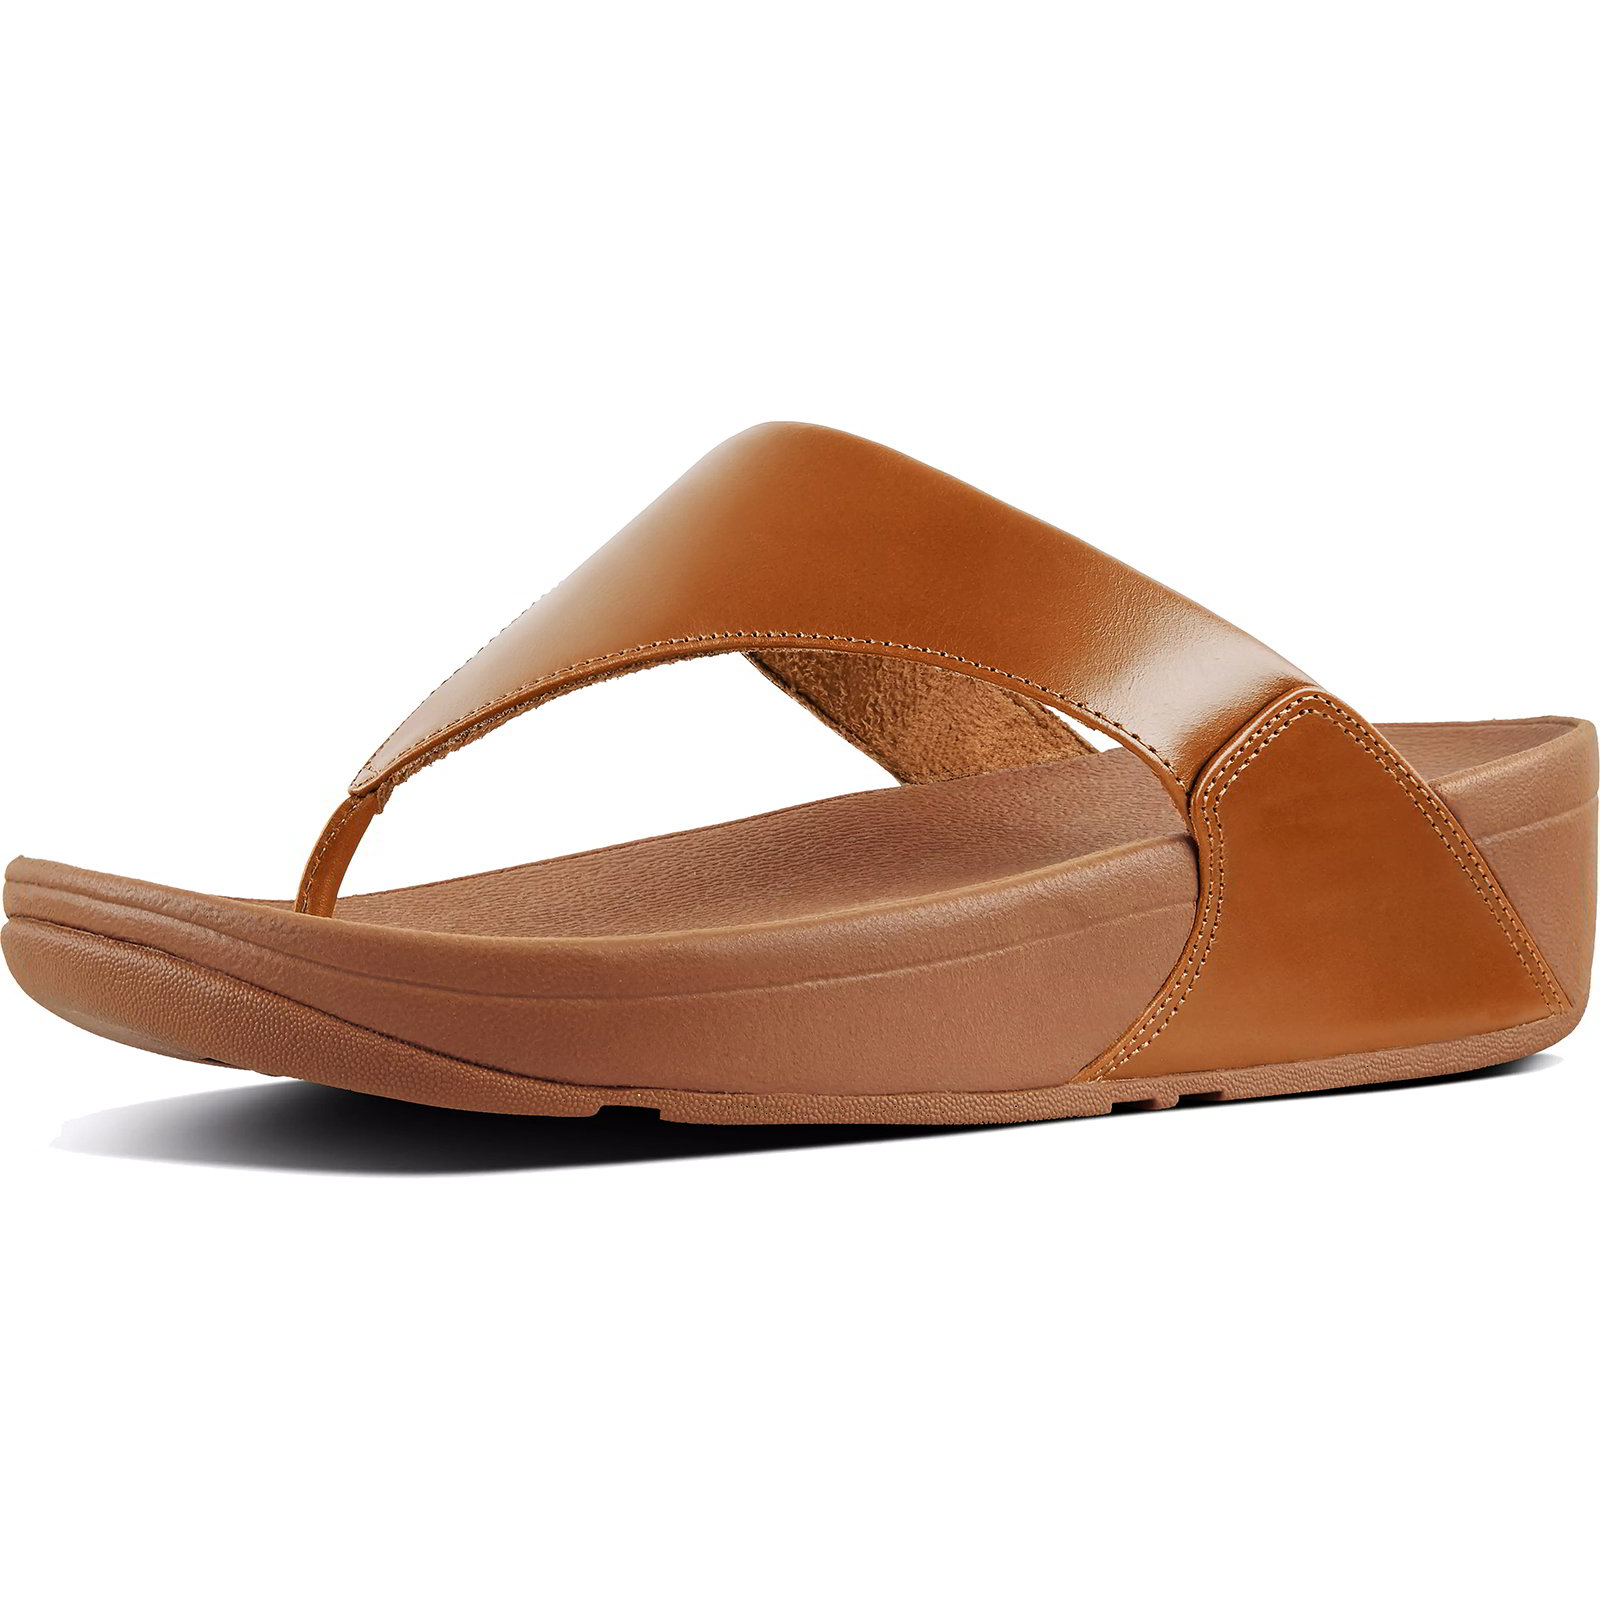 Fitflop Women's Lulu Leather Toe Post Flip Flop Sandals - Light Tan - UK 7